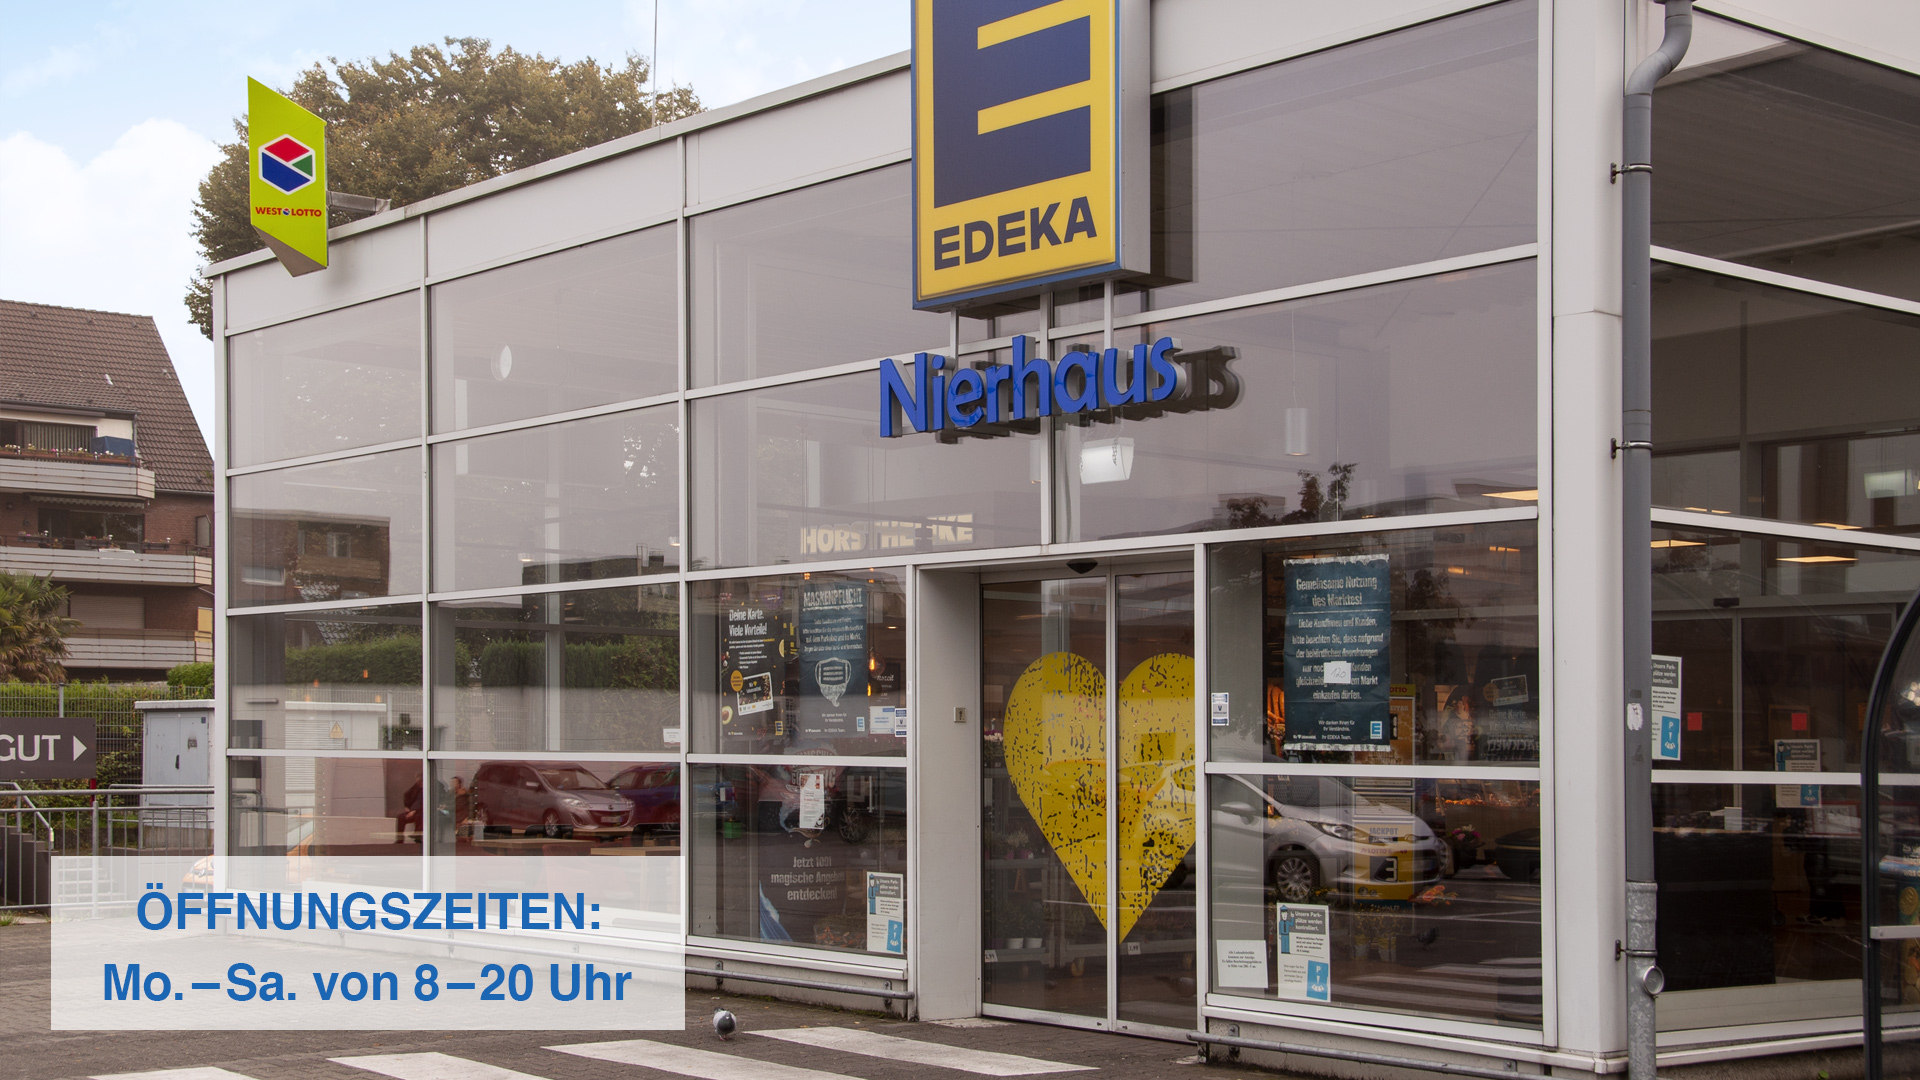 Startseite Header EDEKA Nierhaus Eingang mit Öffnungszeiten unten links